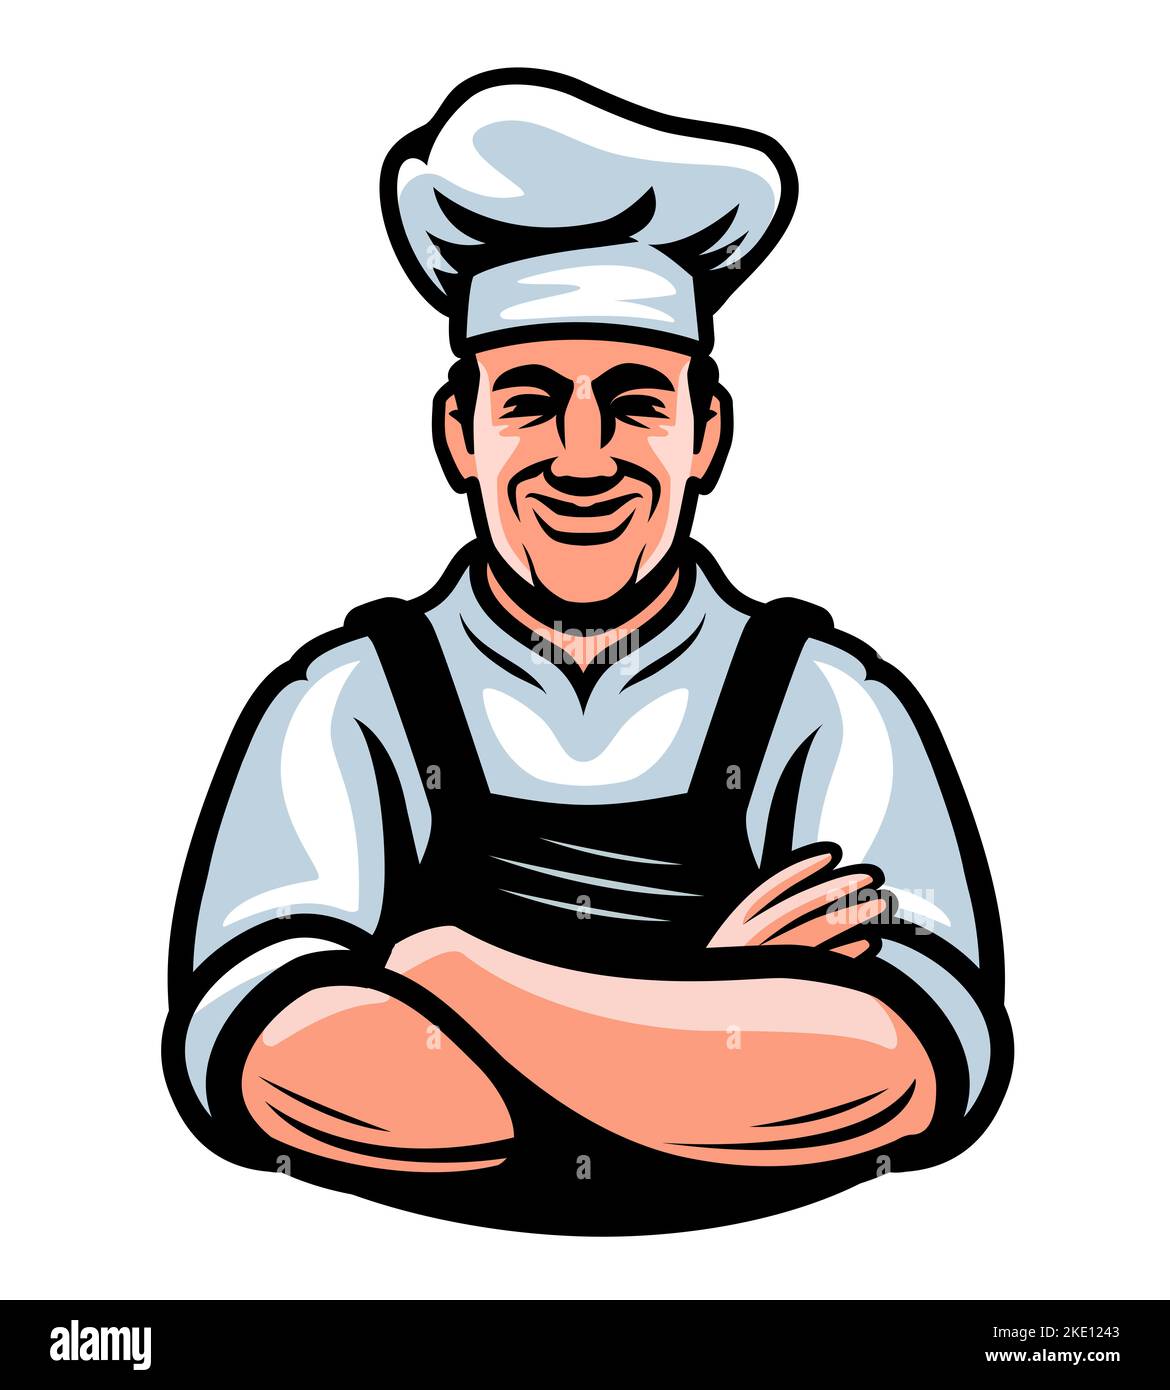 Bonne cuisine attrayante. Belle illustration de chef masculin adulte. Restaurant, cuisine concept alimentaire Banque D'Images